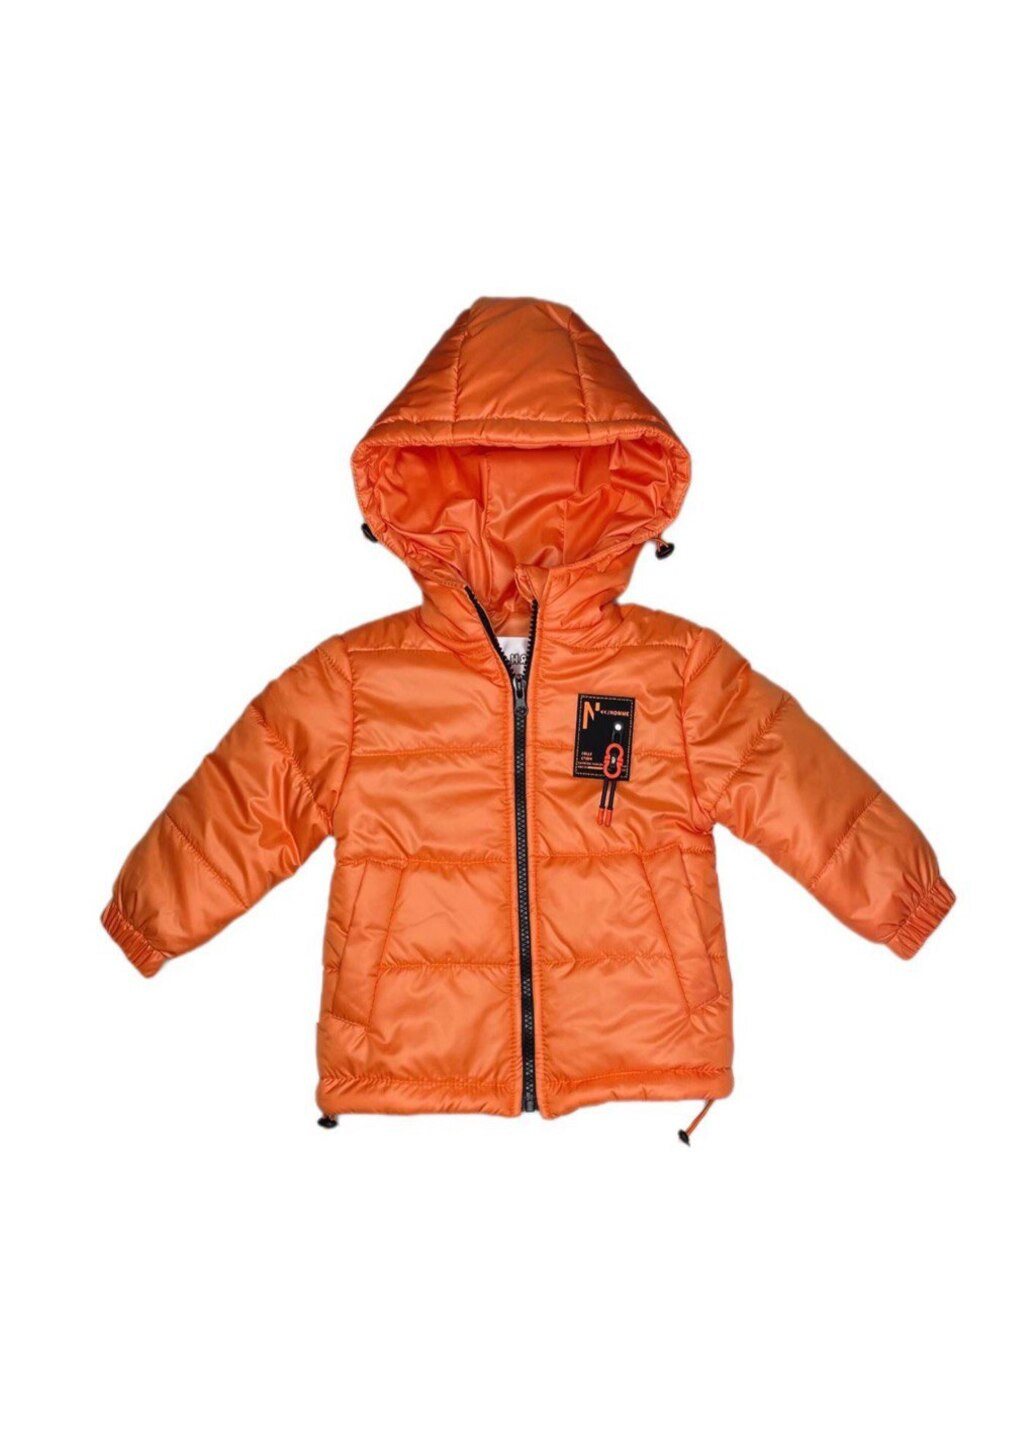 Оранжевая демисезонная куртка демисезонная для мальчика Модняшки